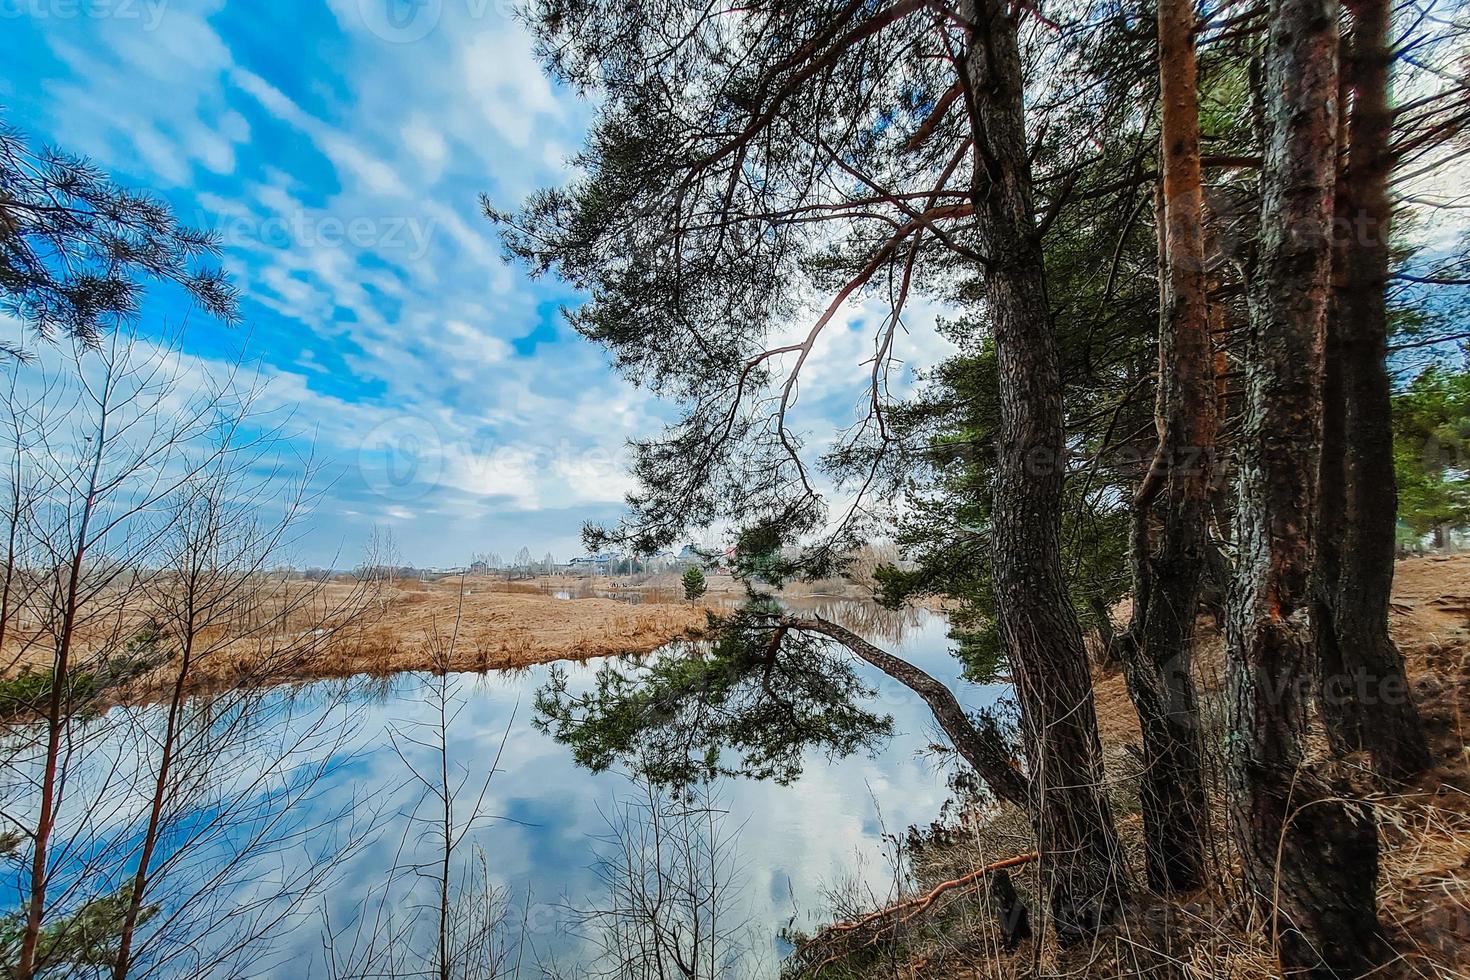 naturaleza del norte a principios de primavera. pinos en la orilla del río. turismo ecológico, paisaje tranquilo. el cielo azul se refleja en el agua. foto